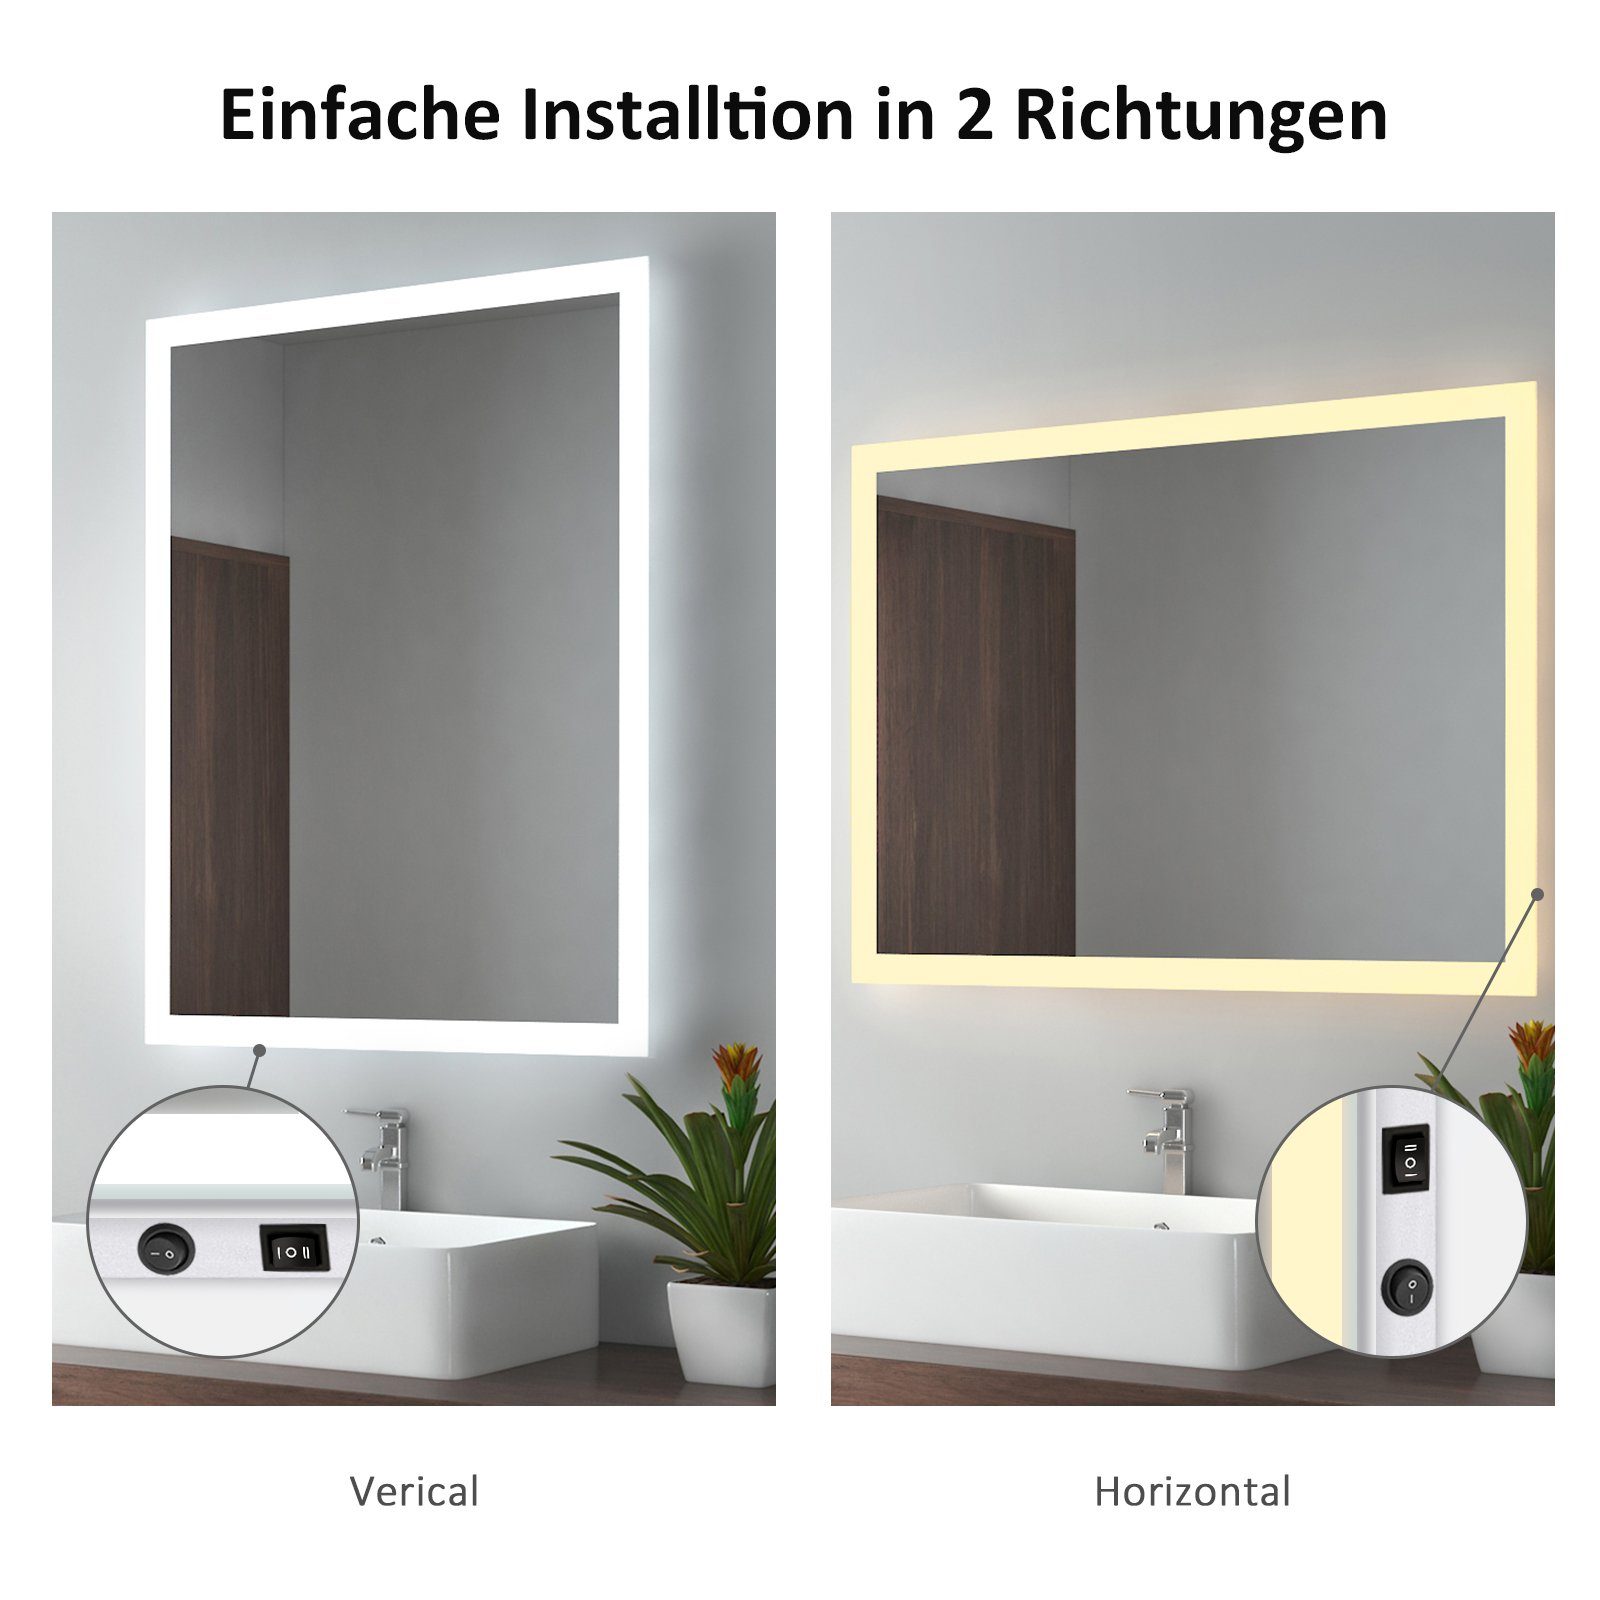 Lichtfarbe mit Badspiegel Beleuchtung Beschlagfrei, mit 2 EMKE Warmweiß/Kaltweiß Badezimmerspiegel LED Badspiegel Wandspiegel,